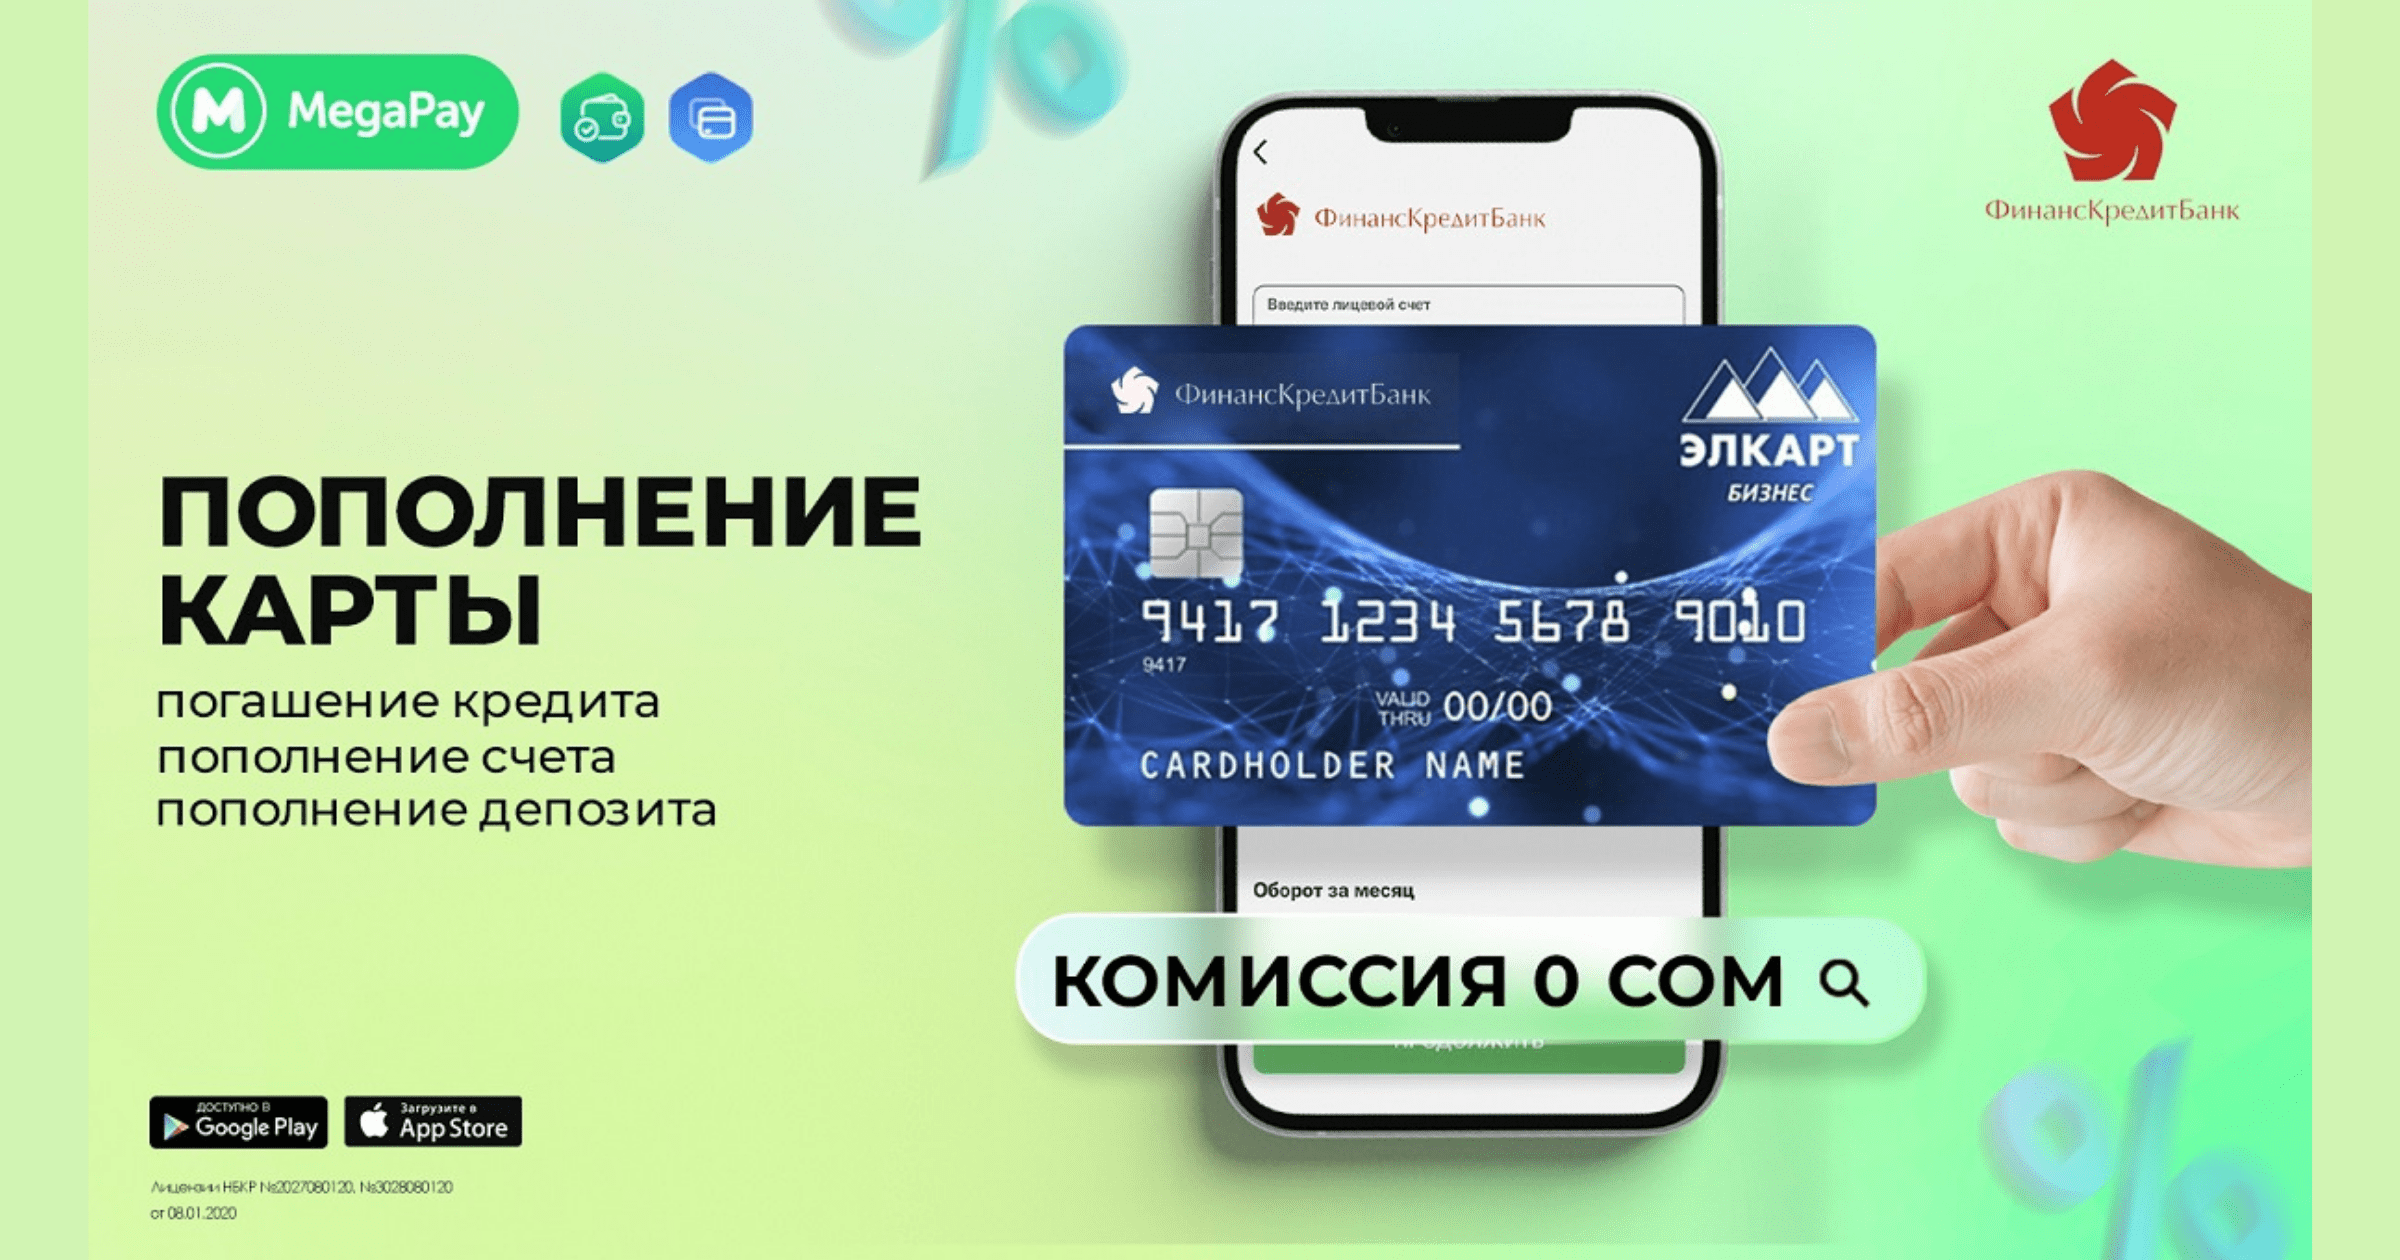 Услуги «ФинансКредитБанка» в приложении MegaPay БЕЗ КОМИССИИ!